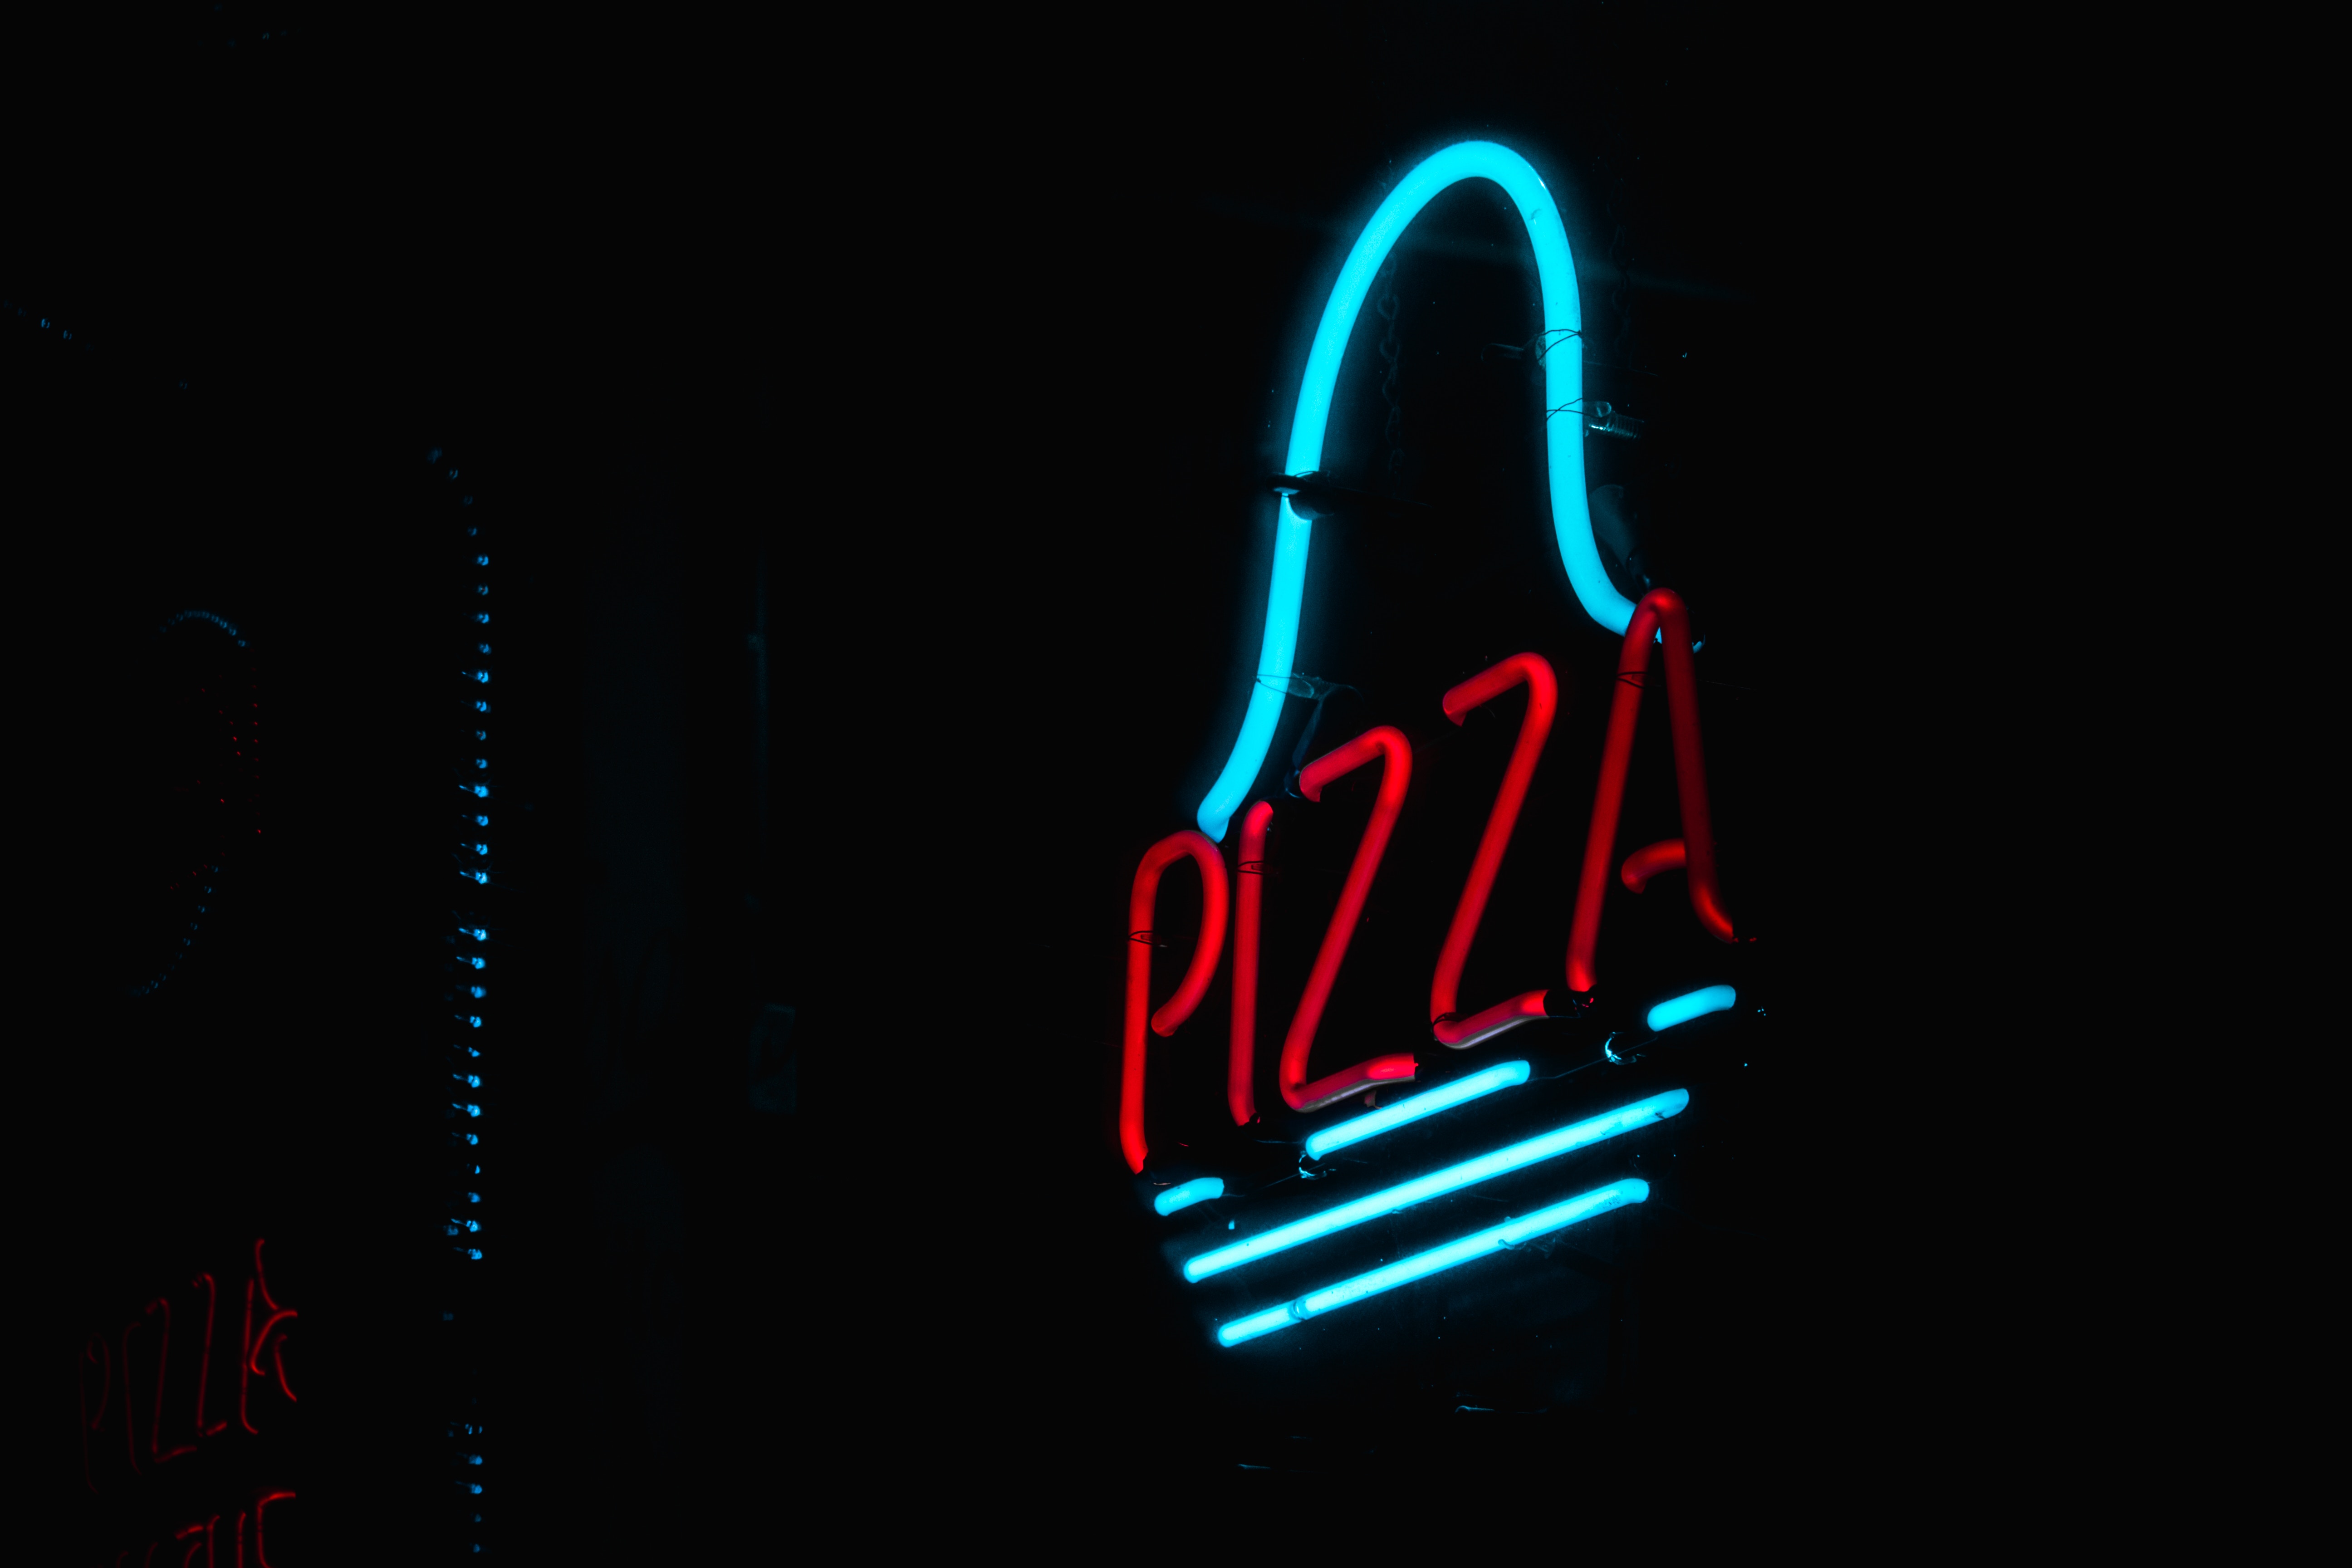 pizza, words, dark, neon, glow, sign, signboard 2160p